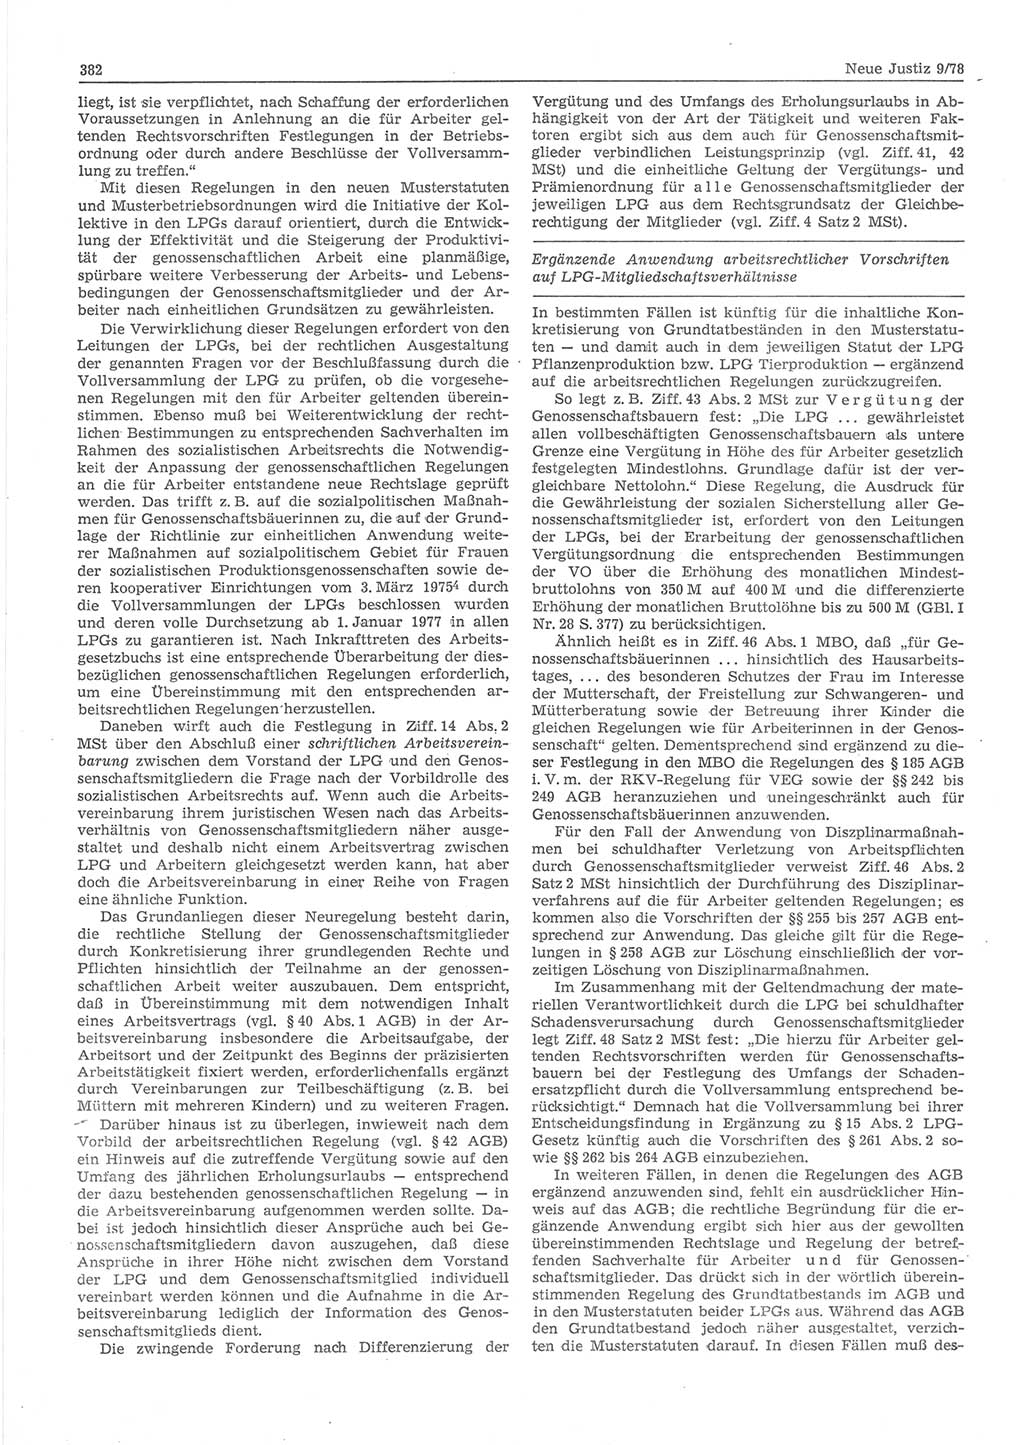 Neue Justiz (NJ), Zeitschrift für sozialistisches Recht und Gesetzlichkeit [Deutsche Demokratische Republik (DDR)], 32. Jahrgang 1978, Seite 382 (NJ DDR 1978, S. 382)